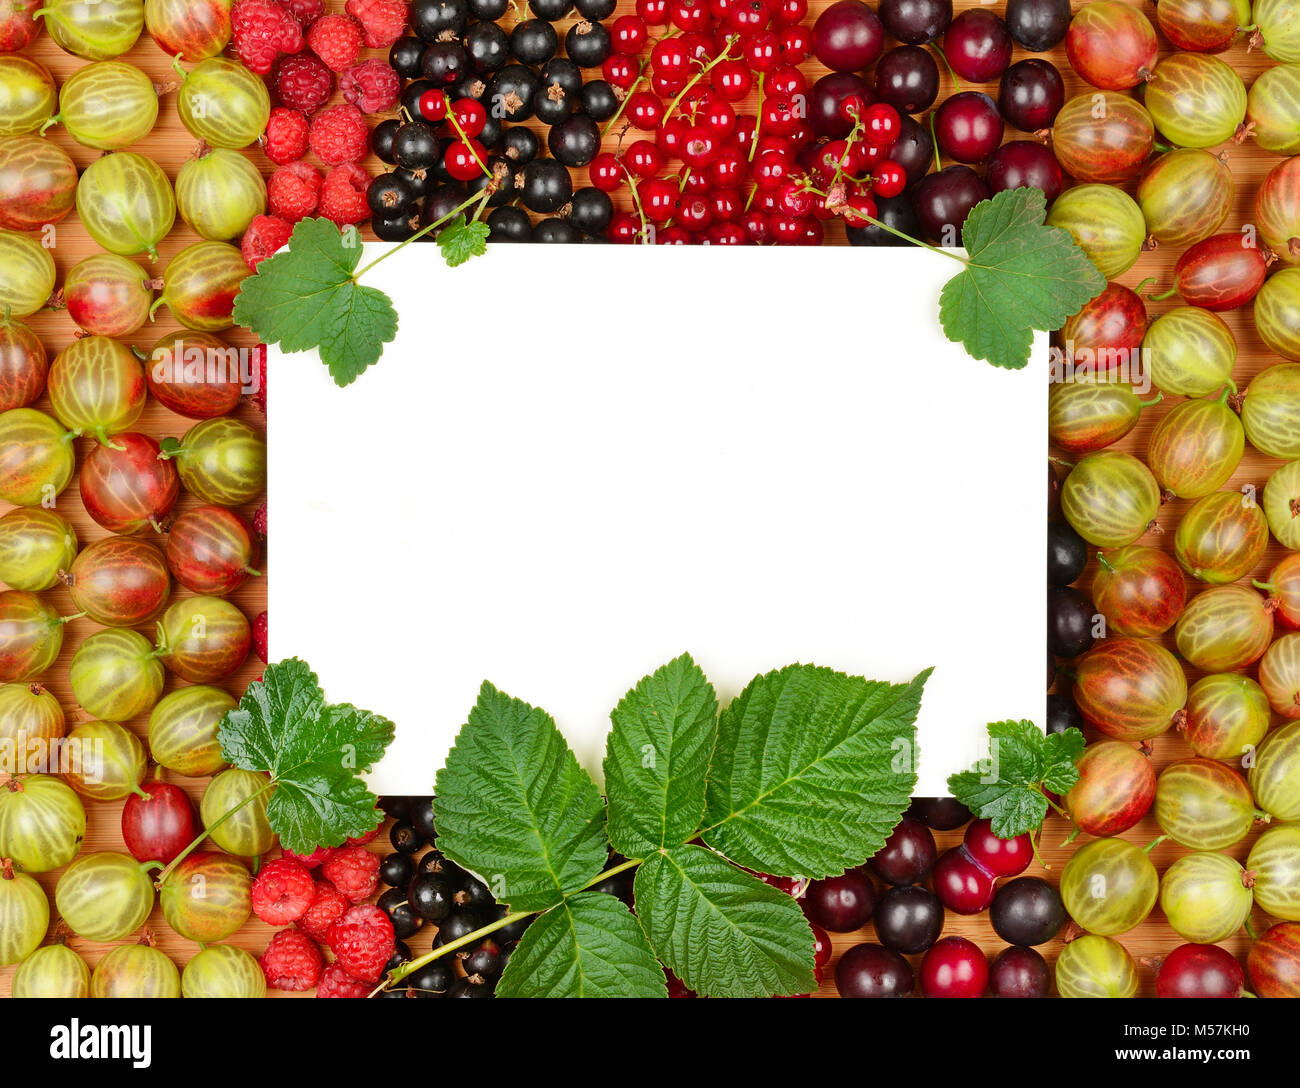 Scheda ricetta sullo sfondo dei frutti di bosco freschi (lamponi, uva spina, ribes, prugna). Foto Stock